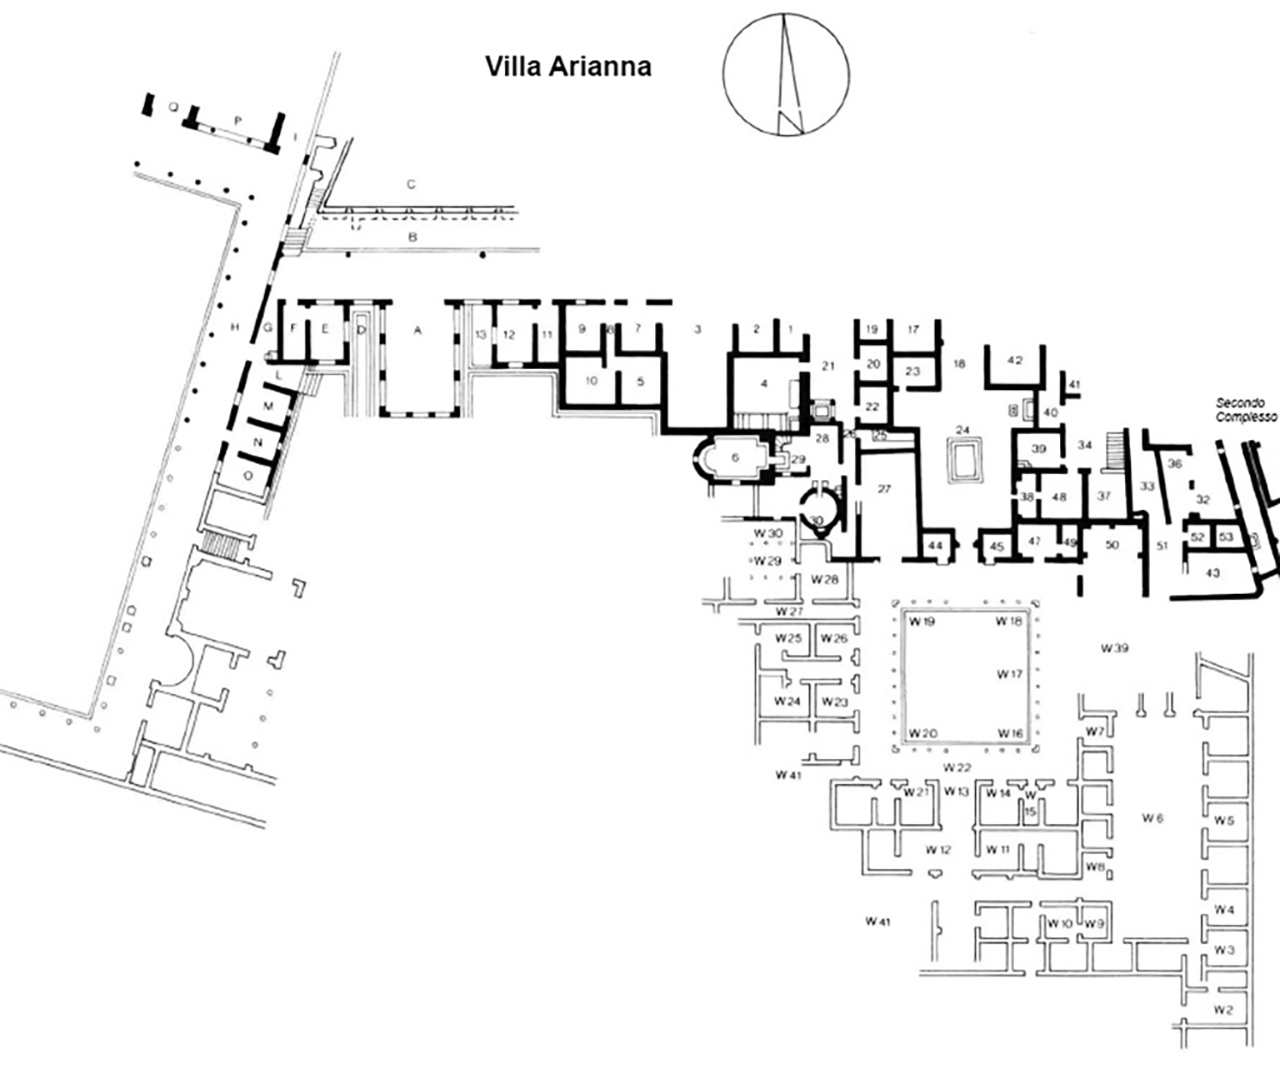 Stabiae, Villa Arianna. Plan after Kockel 1985 with corrections by Allroggen-Bedel A. and De Vos M.

See Kockel V., 1985. Funde und Forschungen in den Vesuvstadten 1: Archäologischer Anzeiger, Heft 3. 1985, Abb. 13.